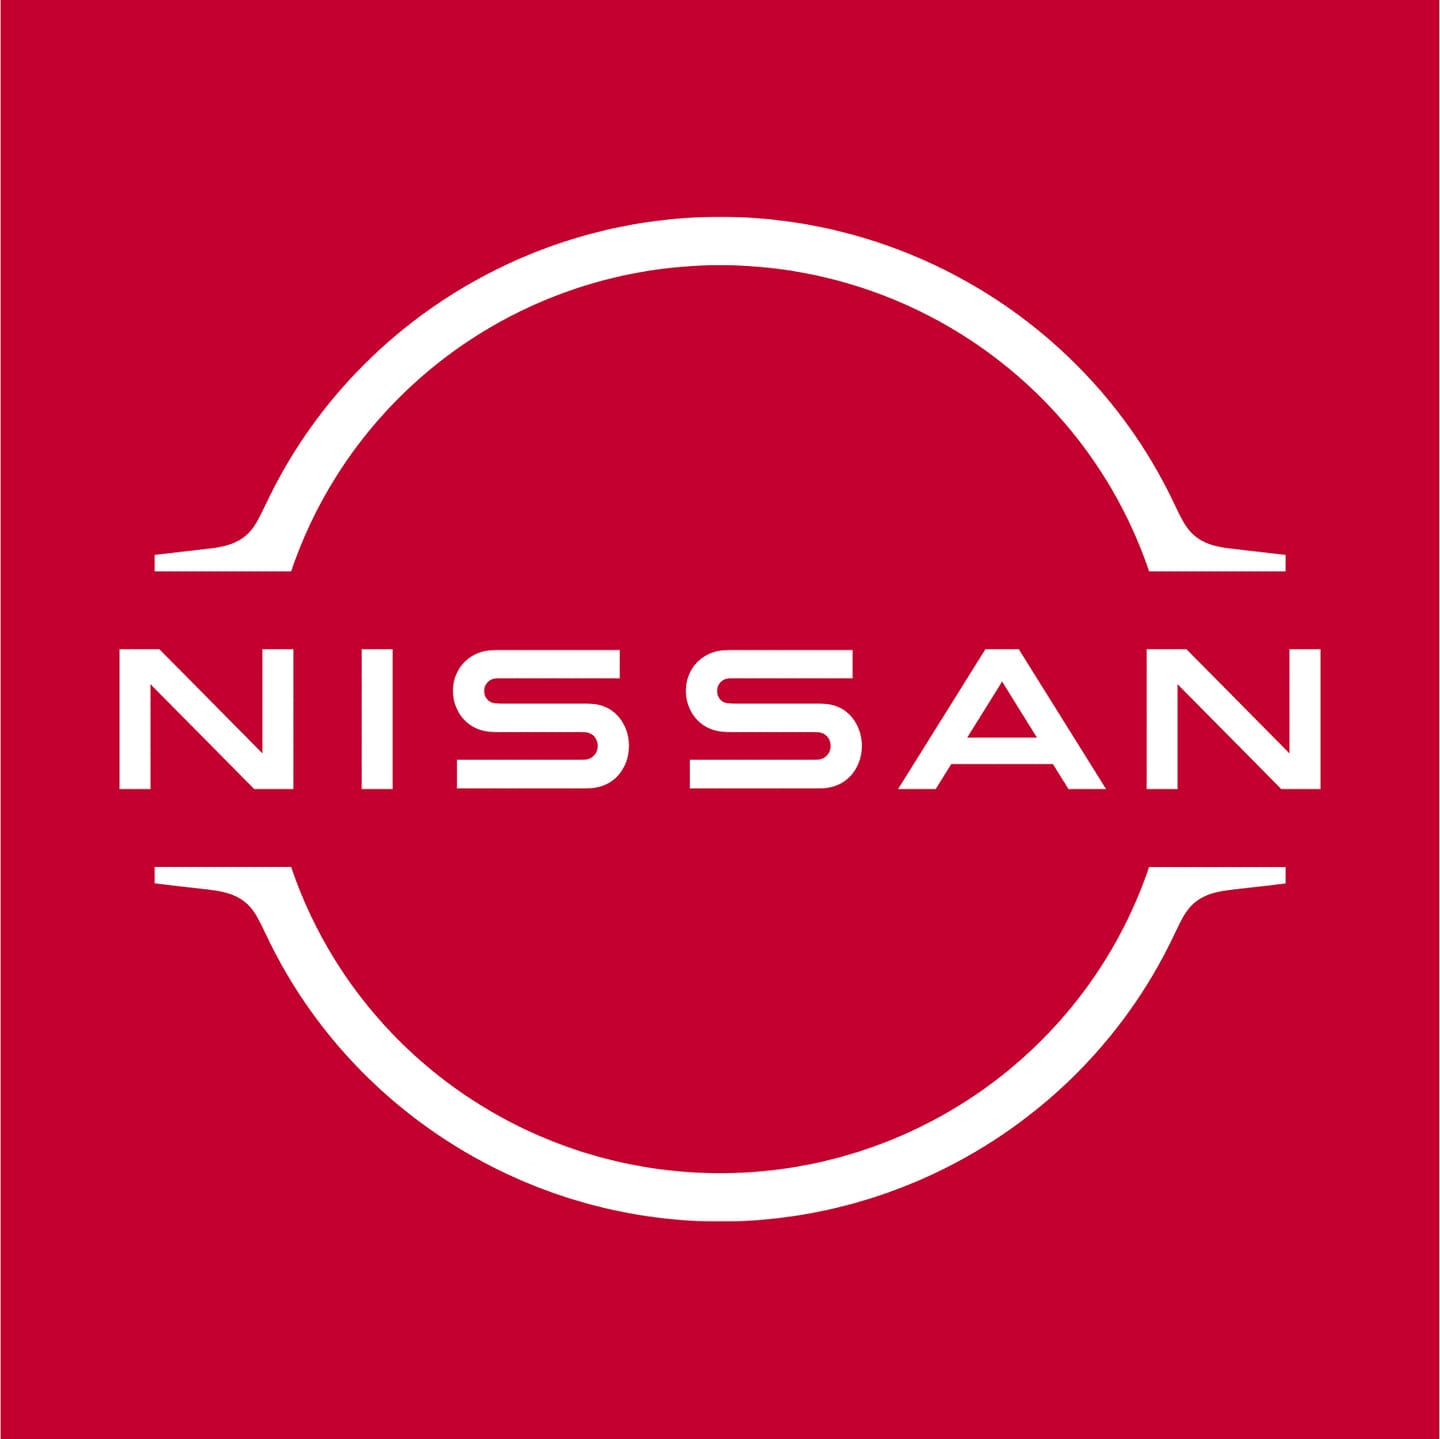 PRAMUKH NISSAN Logo